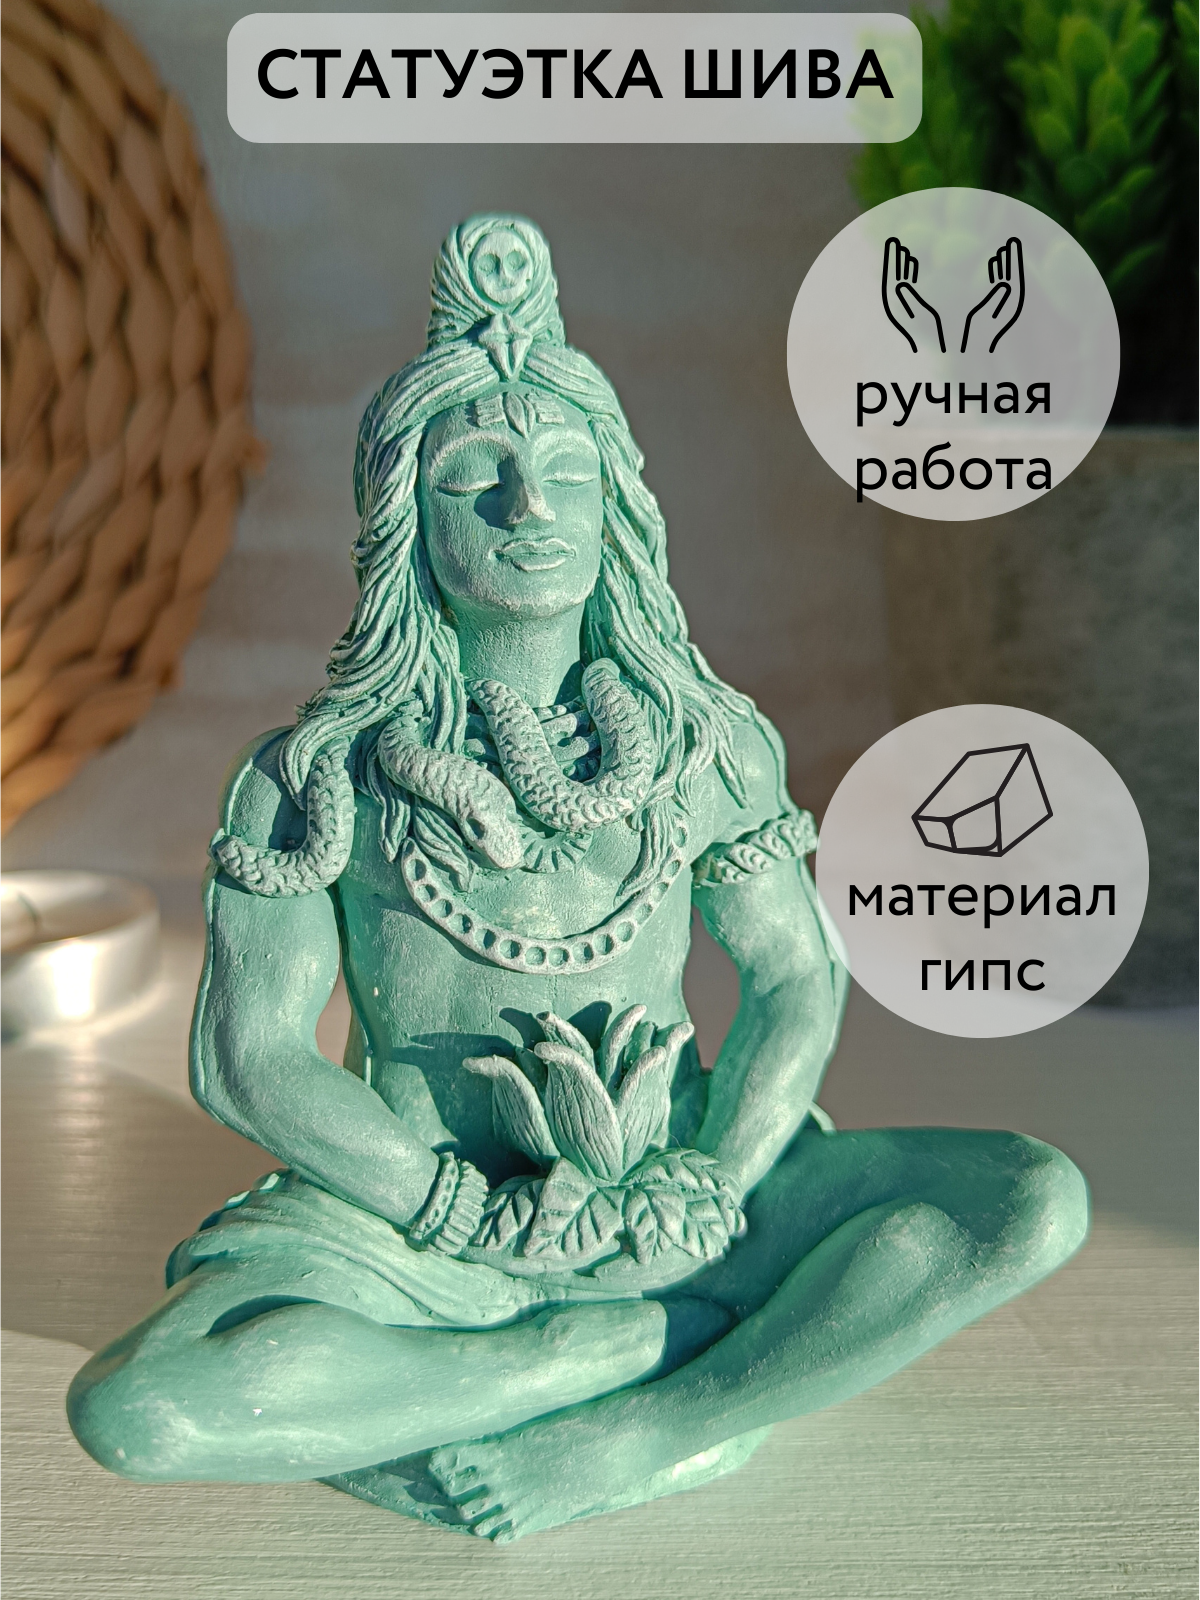 Шива статуэтка Бог, Для медитации